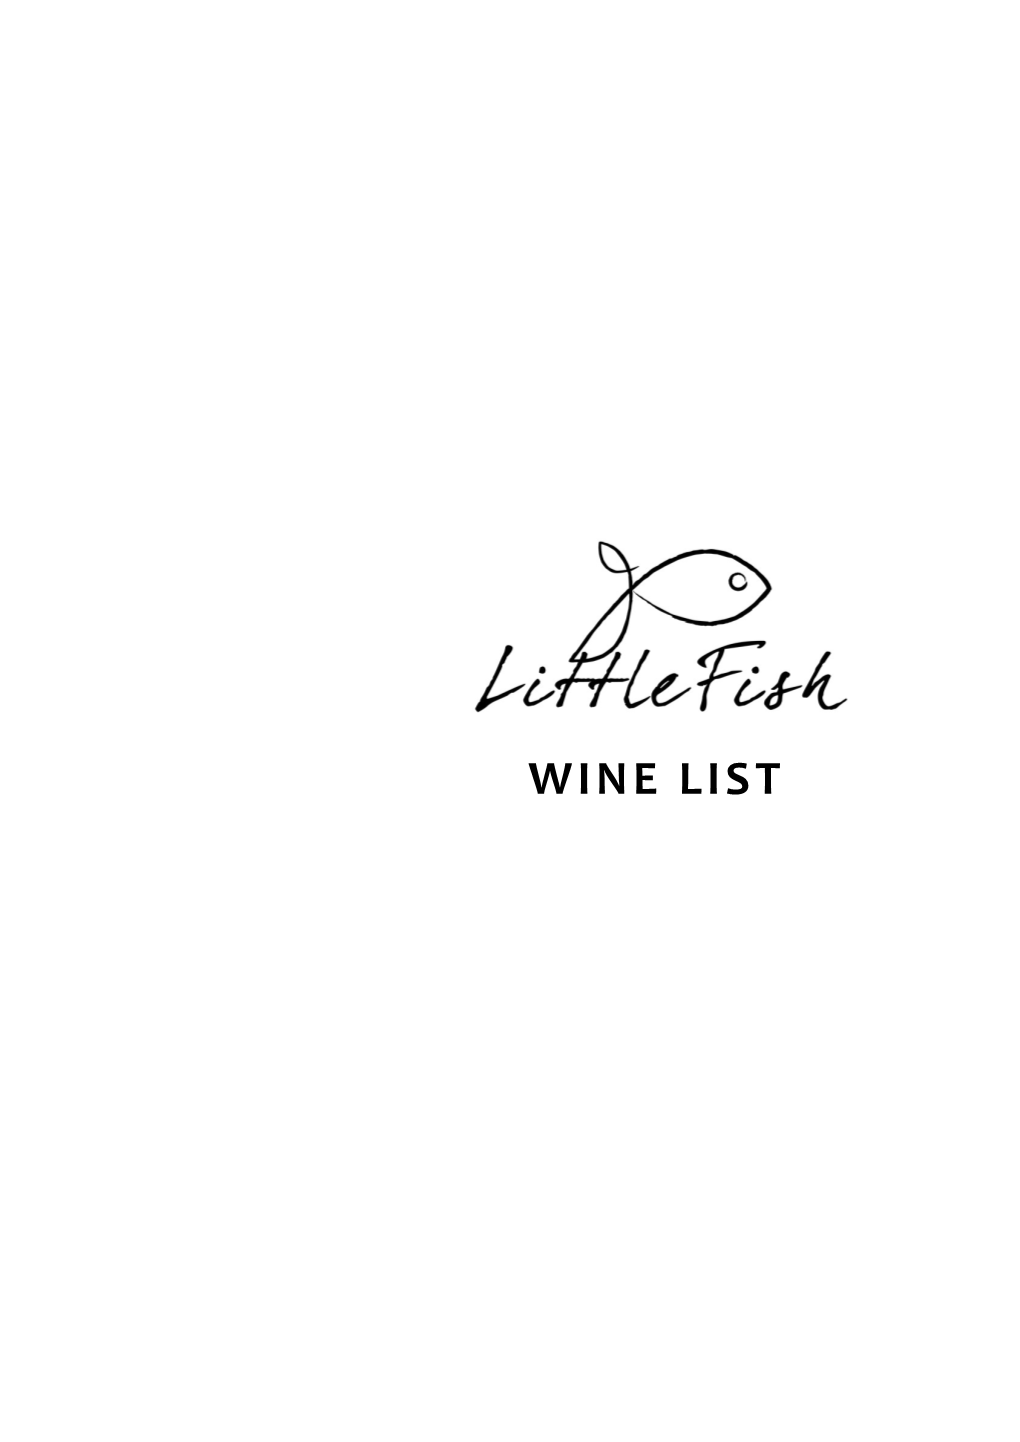 View Wine List